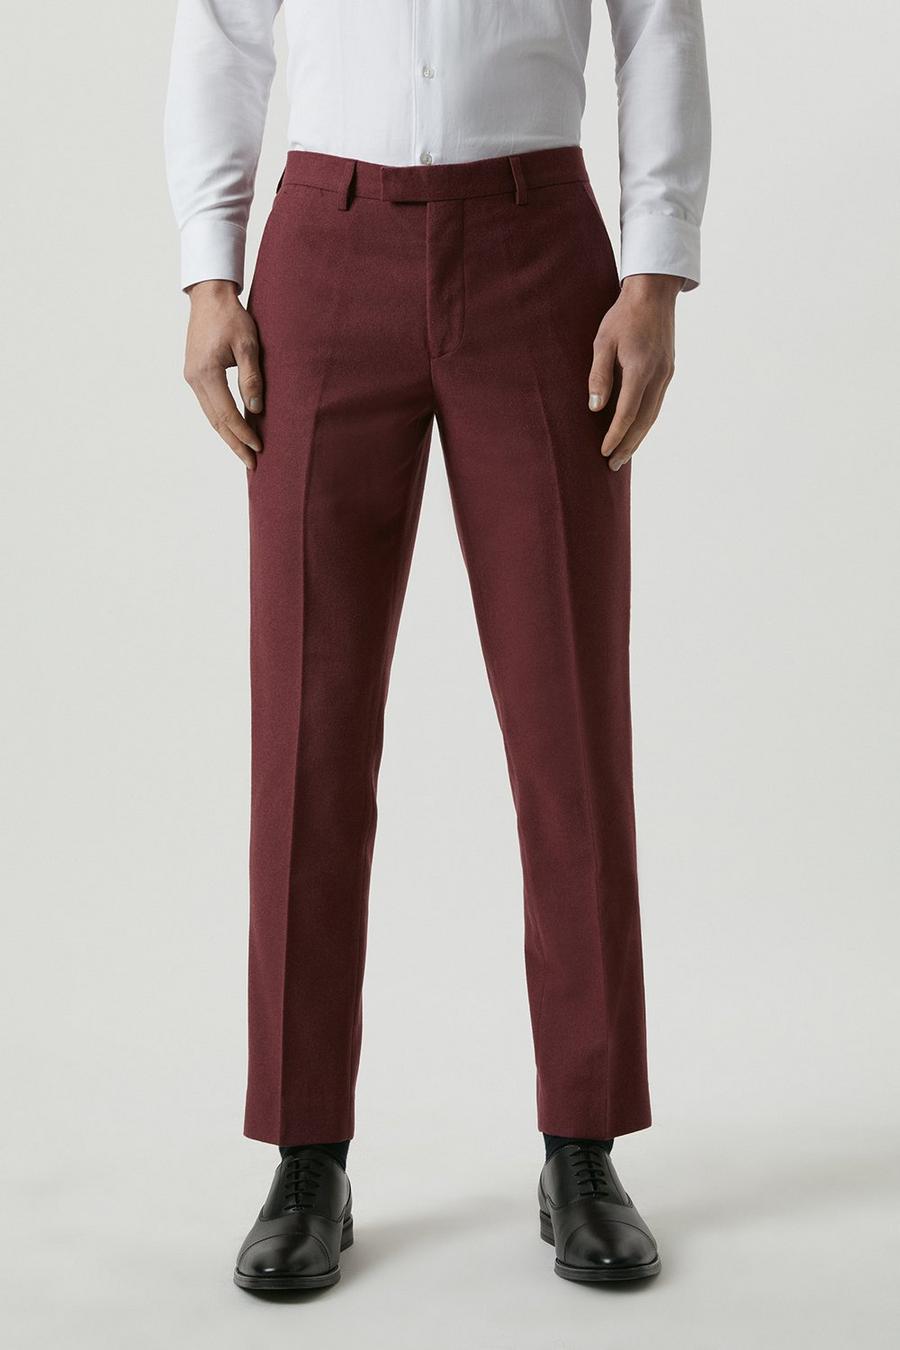 Harry Brown Slim Fit Burgundy Tweed Suit Trousers